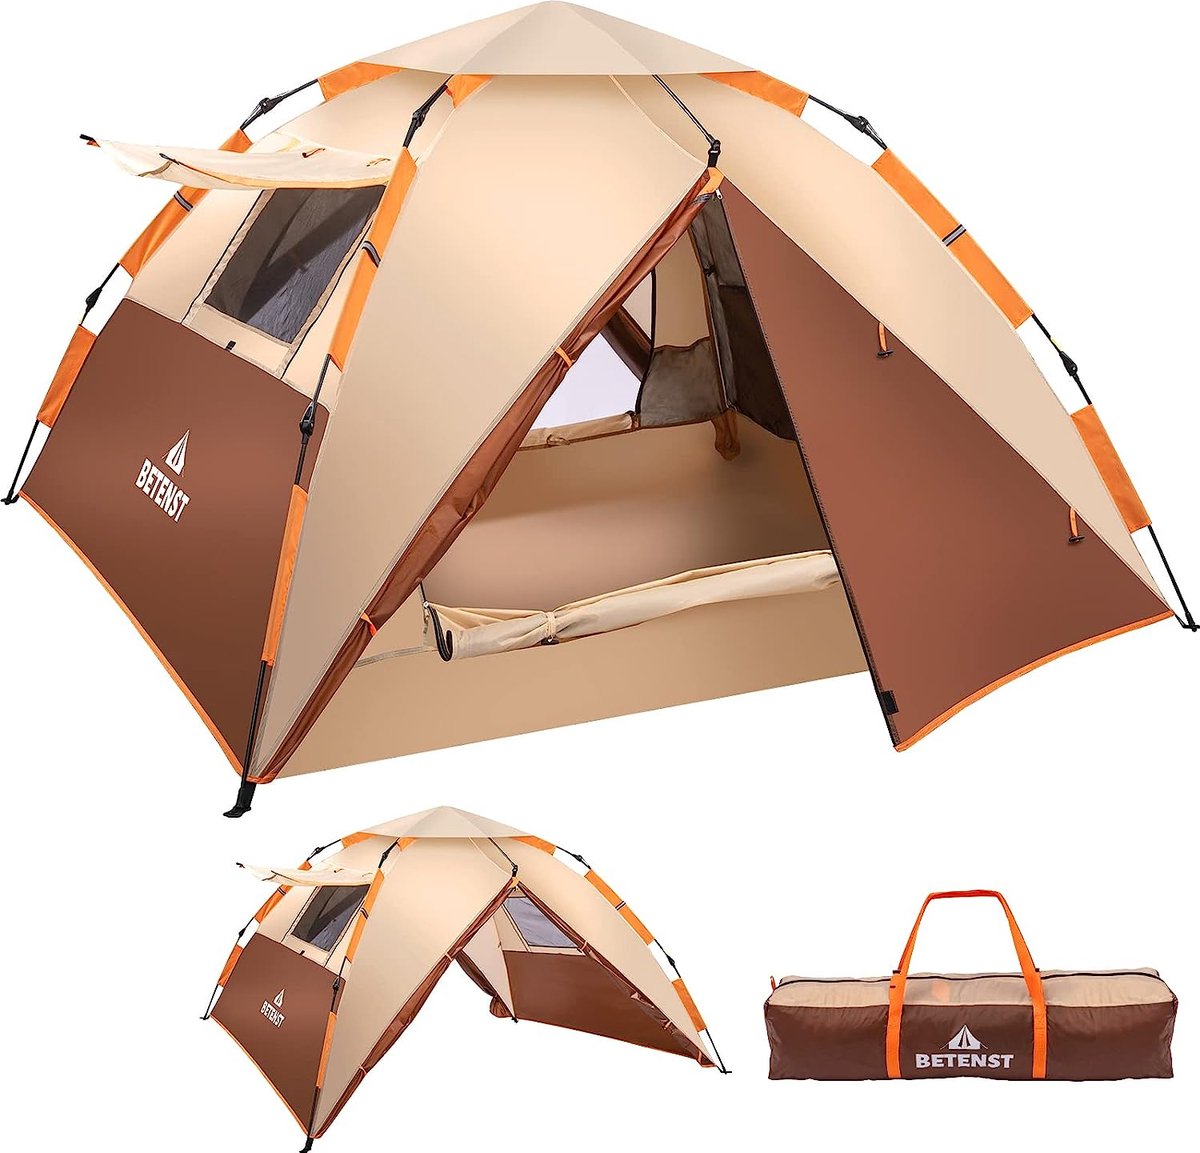 Camping tent 4 personen – Pop up tent - 135x230x230 - 2 Gaasdeuren - 2 Gaasramen - 2 In 1 dubbele lagen